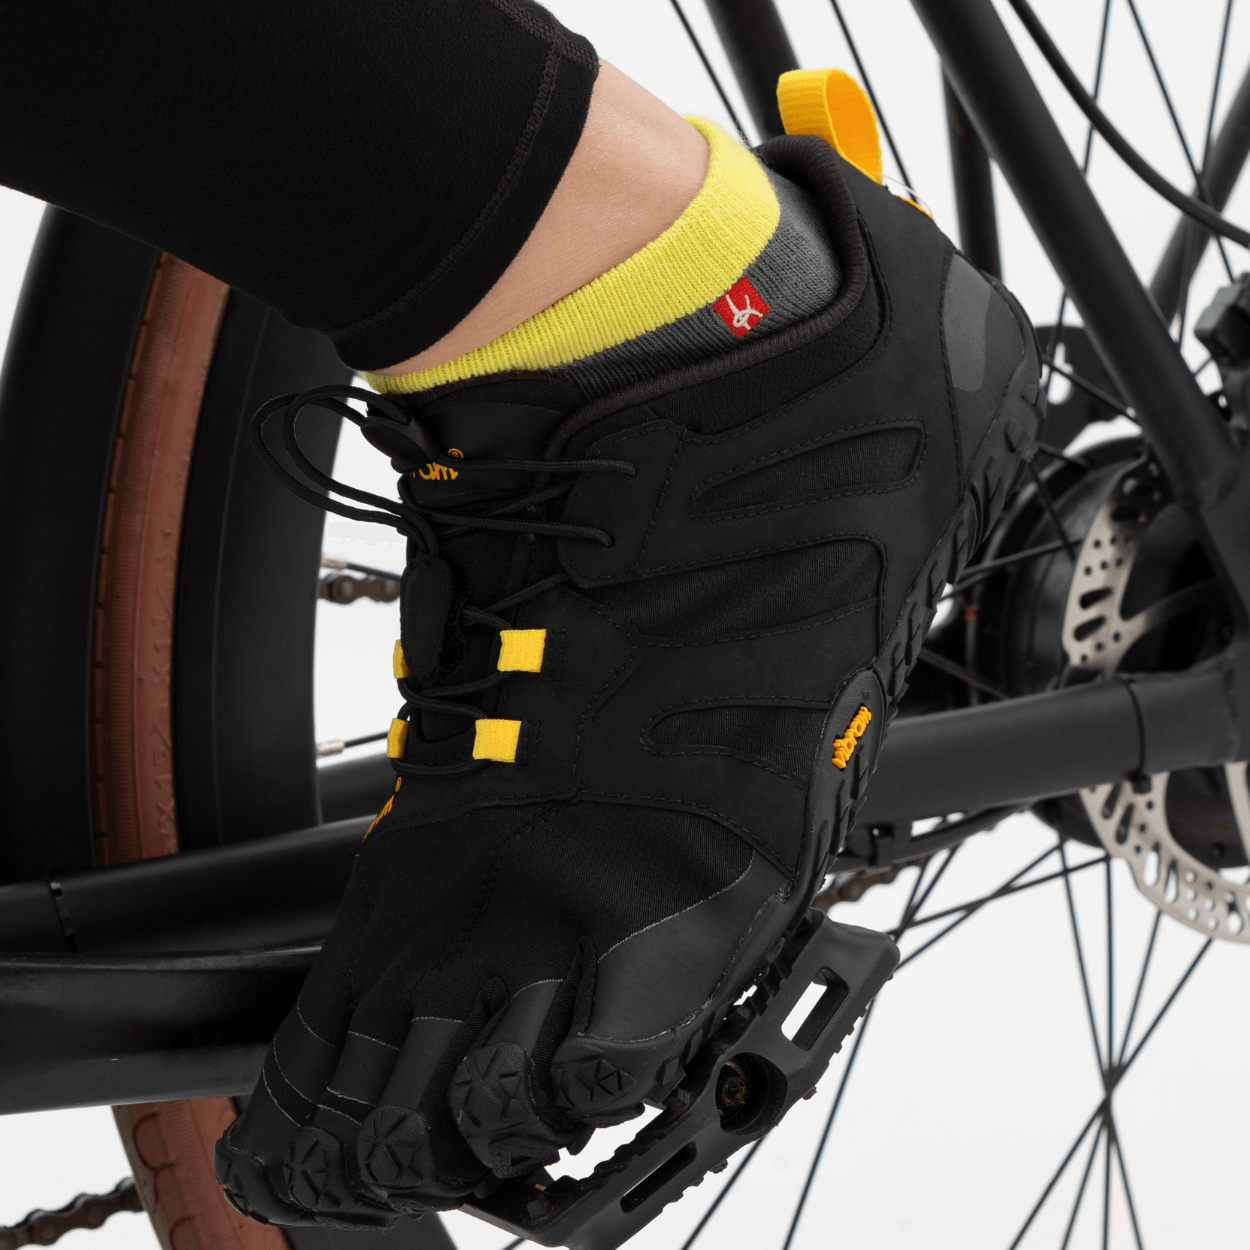 Calcetines de dedos ligeros para deporte y ocio, ideales para ciclismo